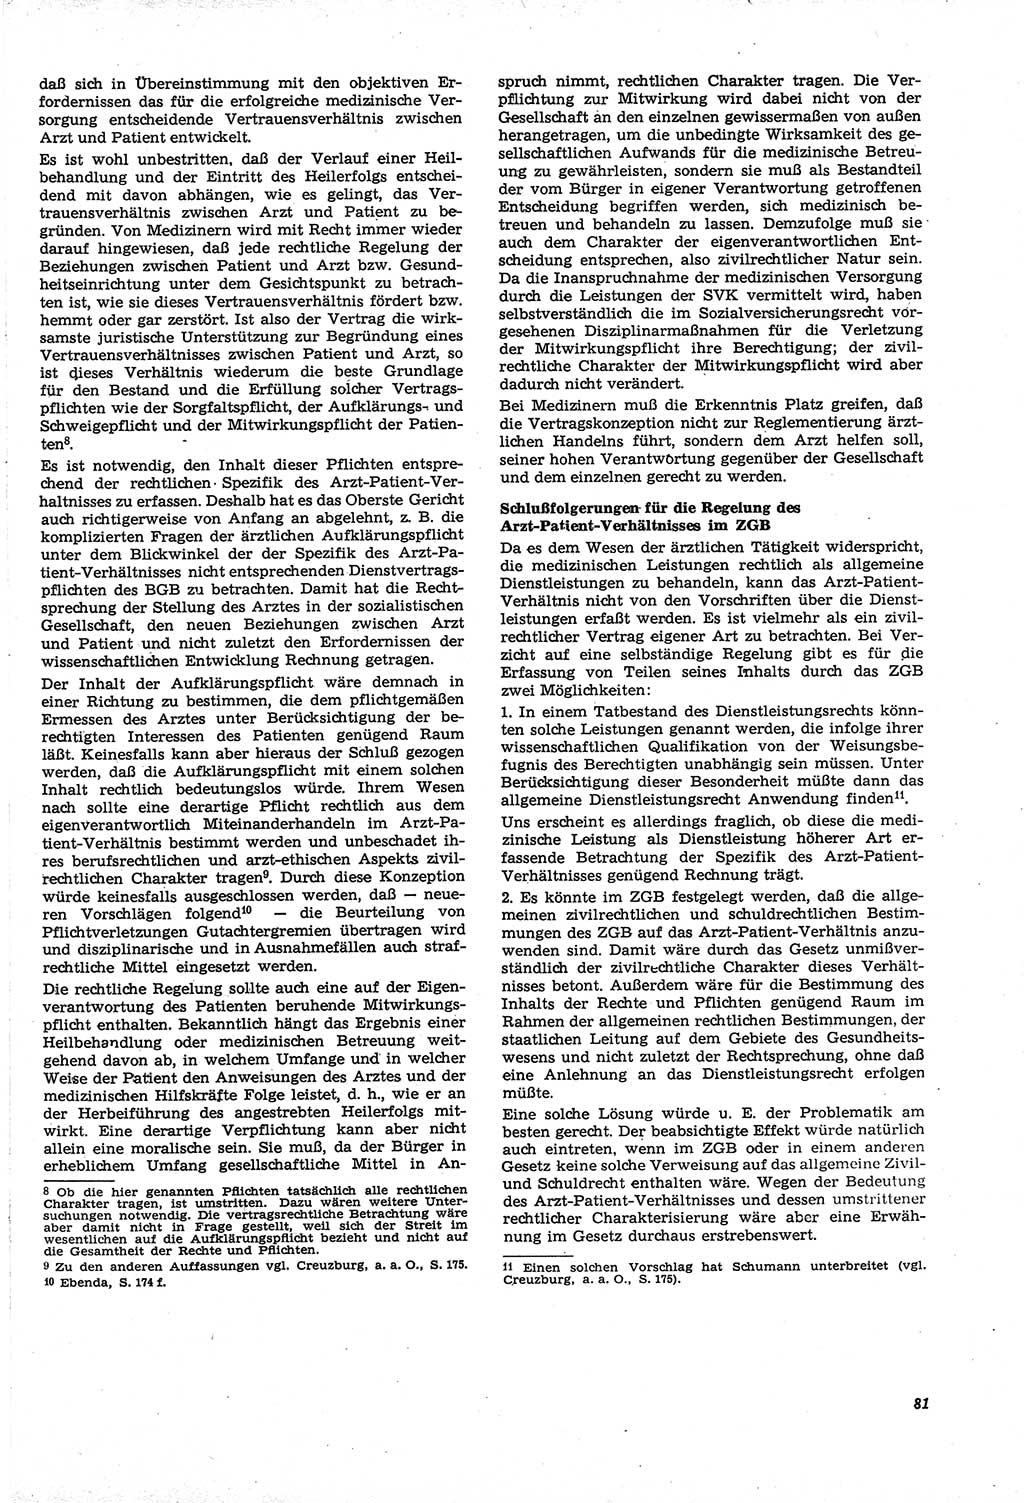 Neue Justiz (NJ), Zeitschrift für Recht und Rechtswissenschaft [Deutsche Demokratische Republik (DDR)], 21. Jahrgang 1967, Seite 81 (NJ DDR 1967, S. 81)